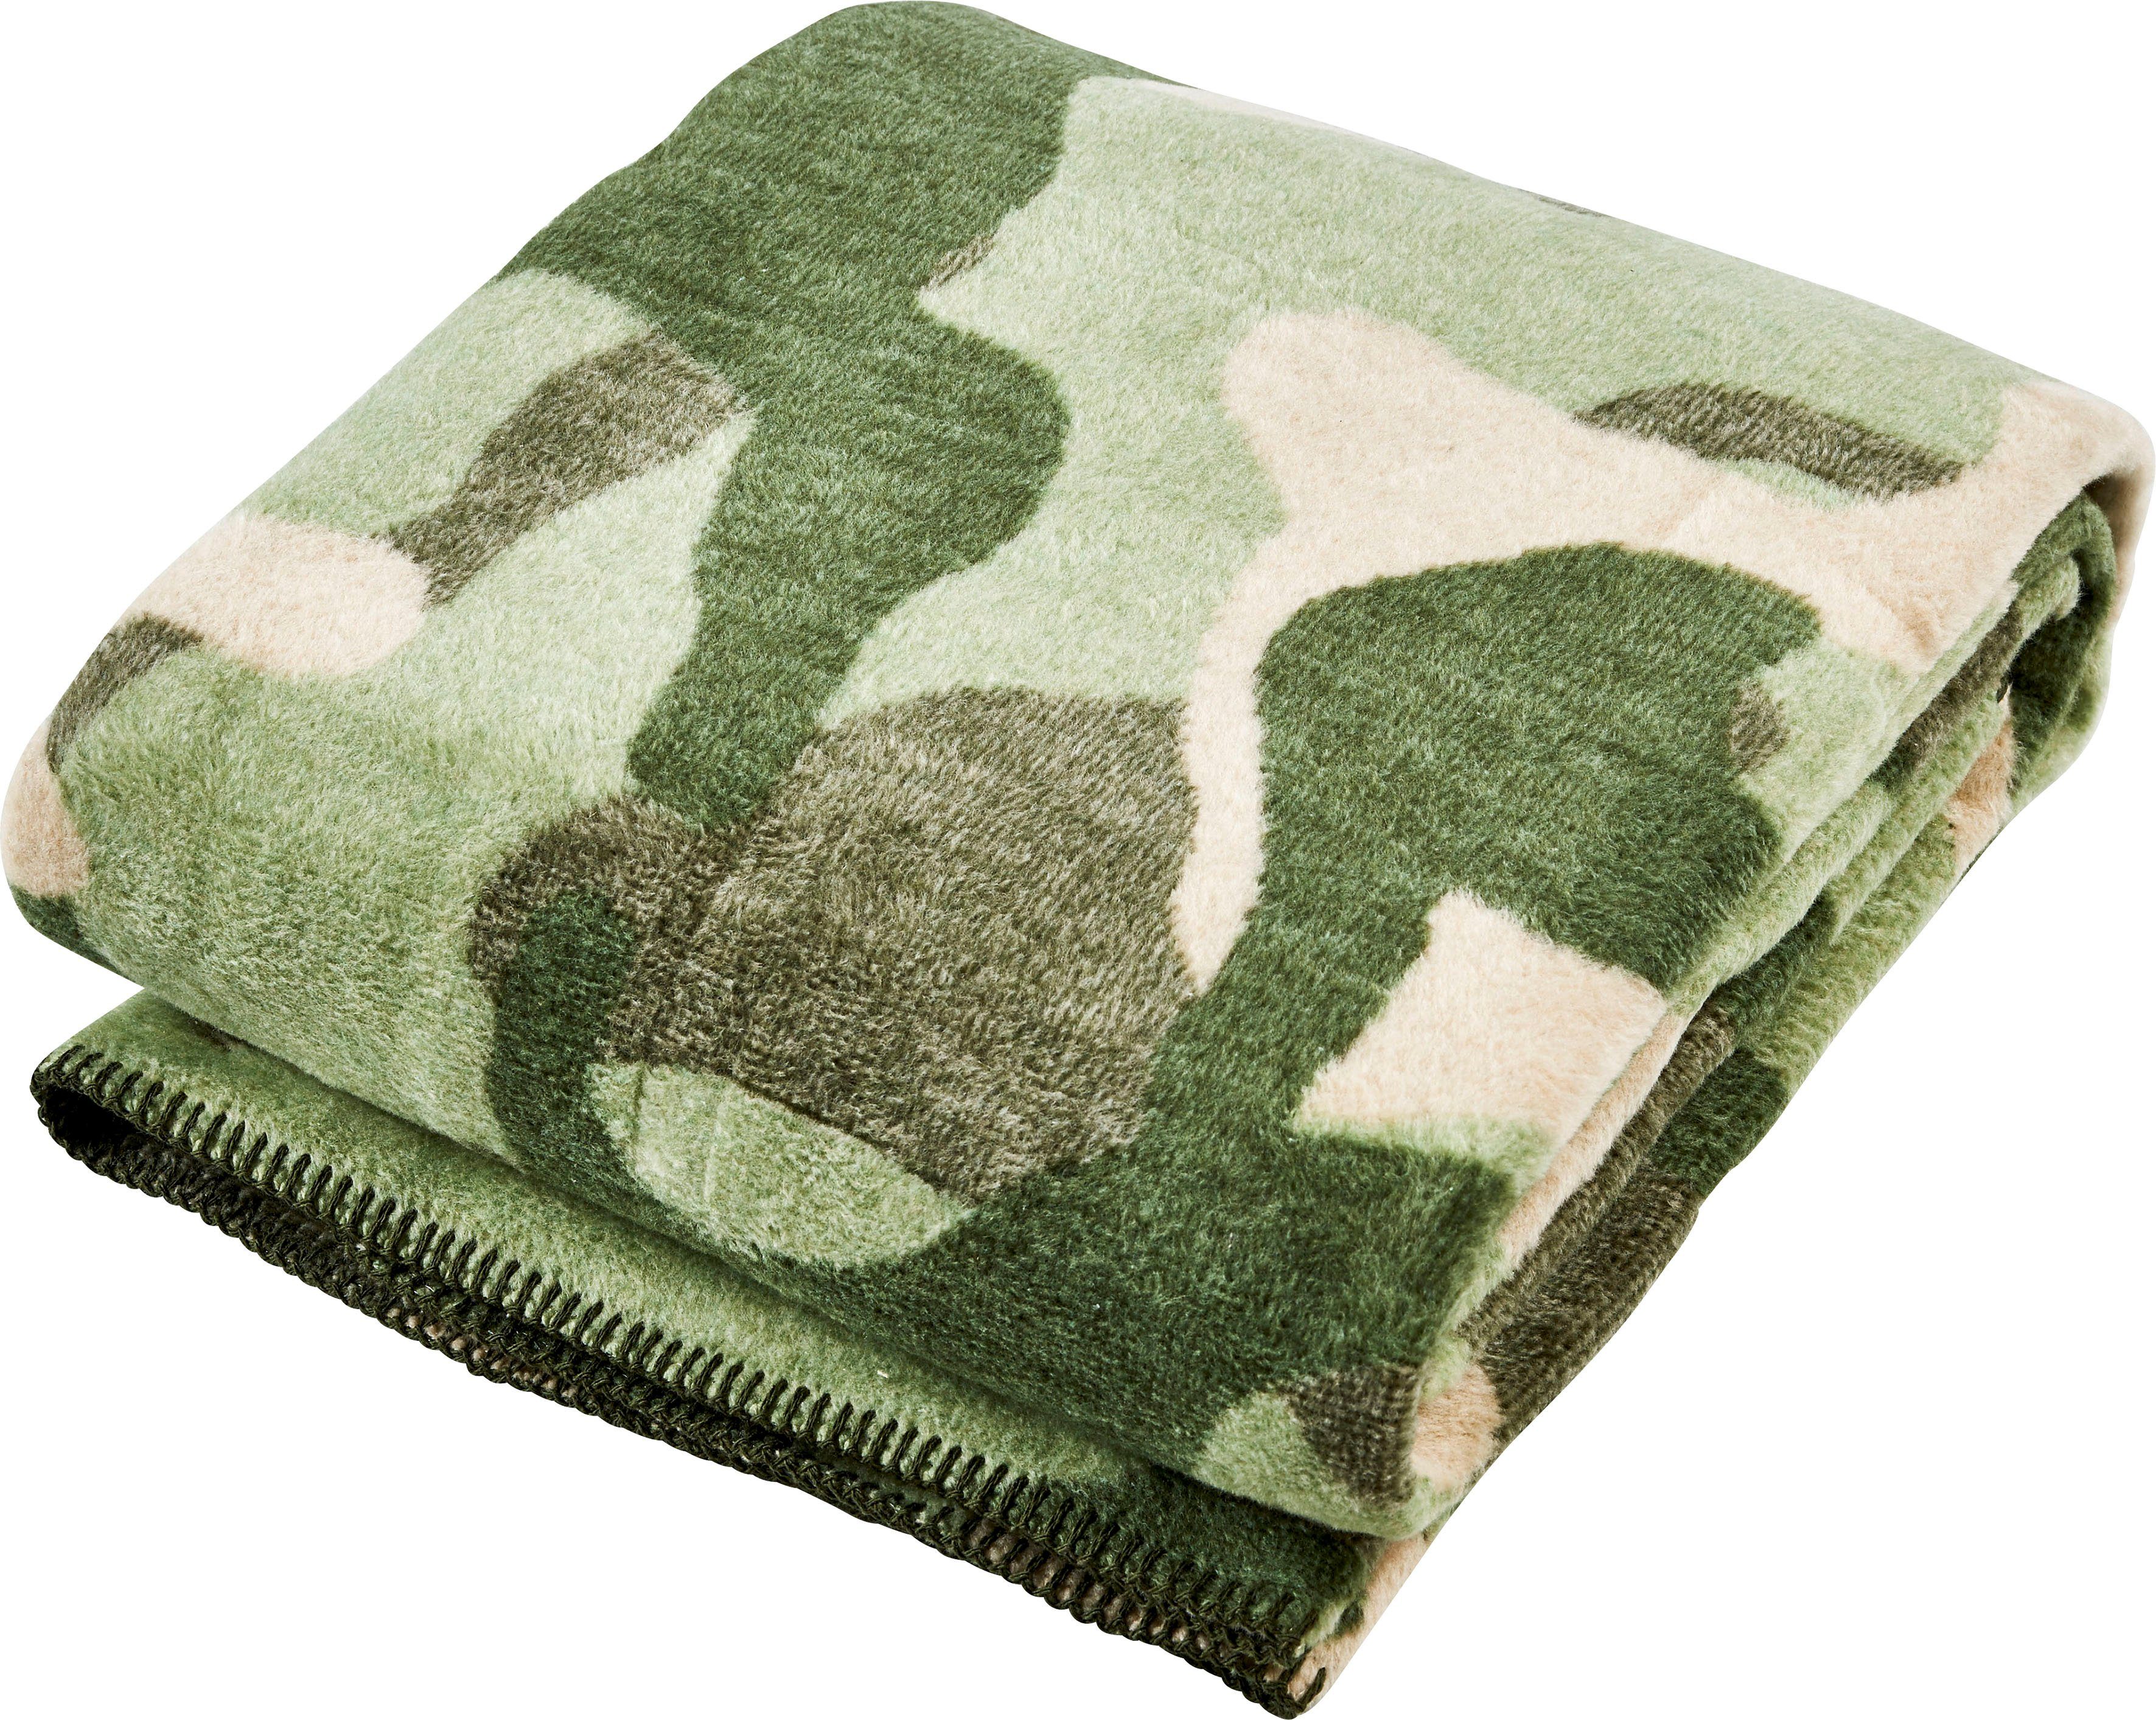 Wohndecke Camouflage, done.®, Ziernaht, einfassender mit Wohndecke khaki/grün/beige Kuscheldecke